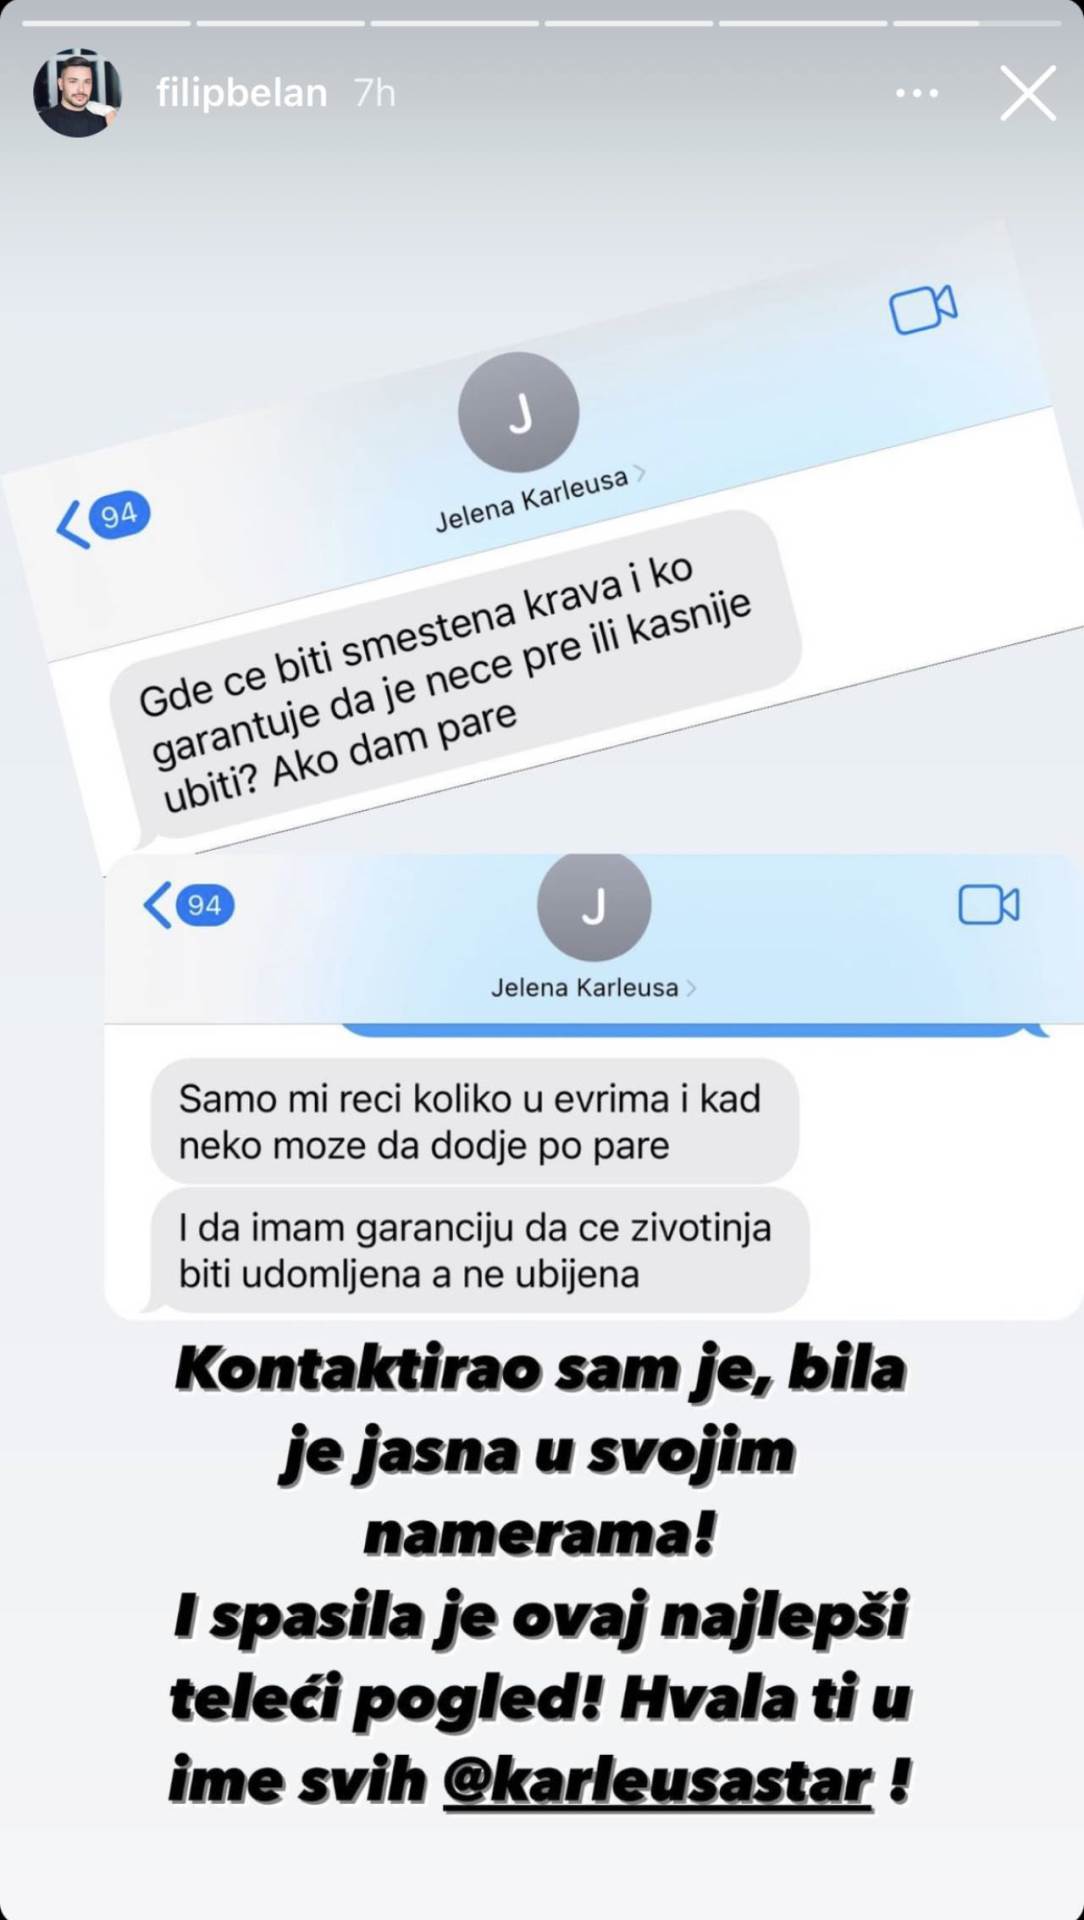  Jedan od korisnika Instagrama otkrio je Karleuša bila ta koja je spasila kravicu Slavicu. 